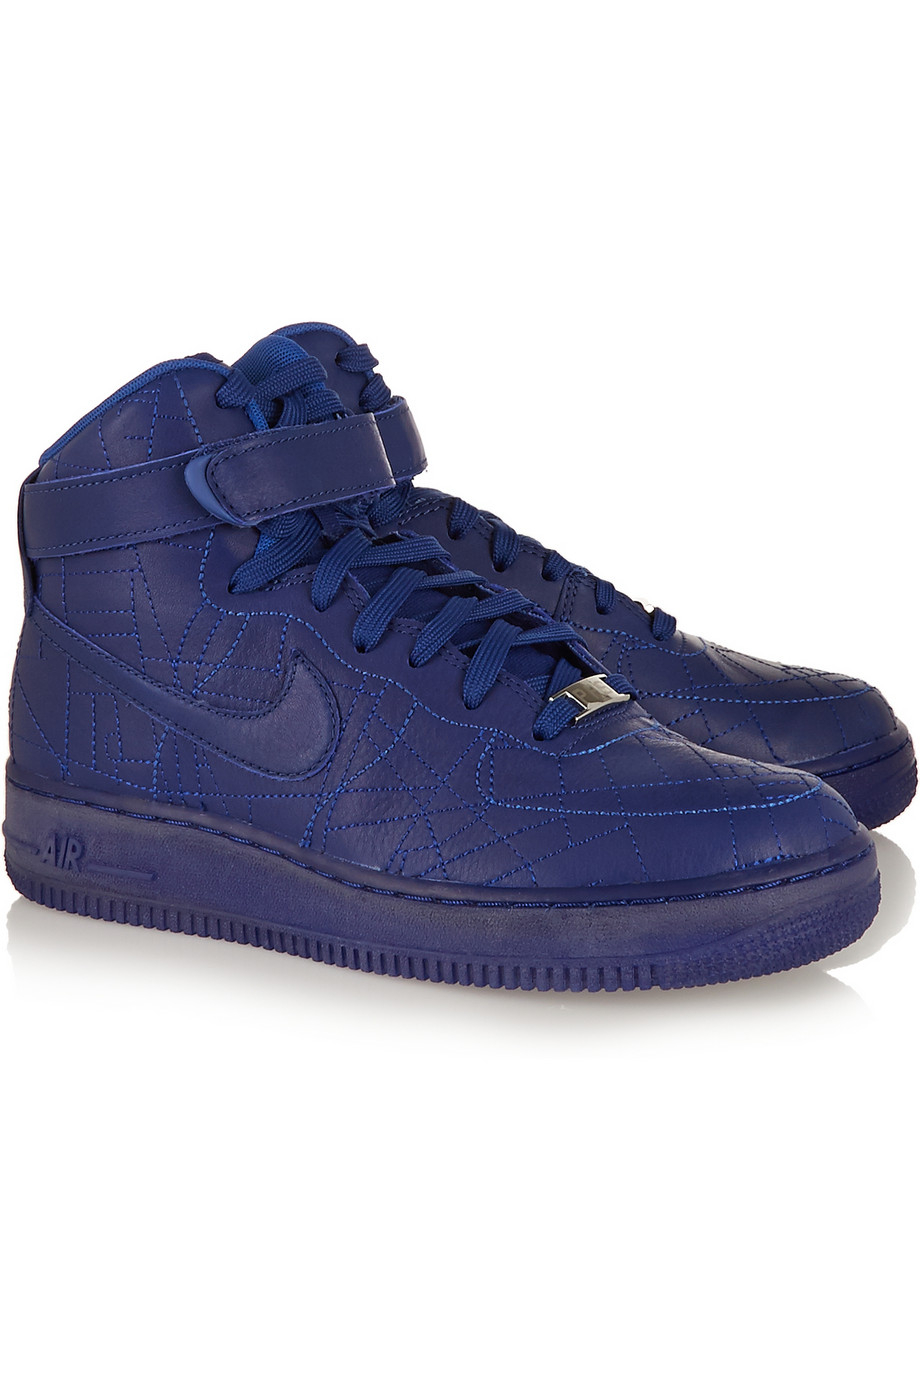 Lyst Nike Air Force 1 Paris Leather HighTop Sneakers in Blue